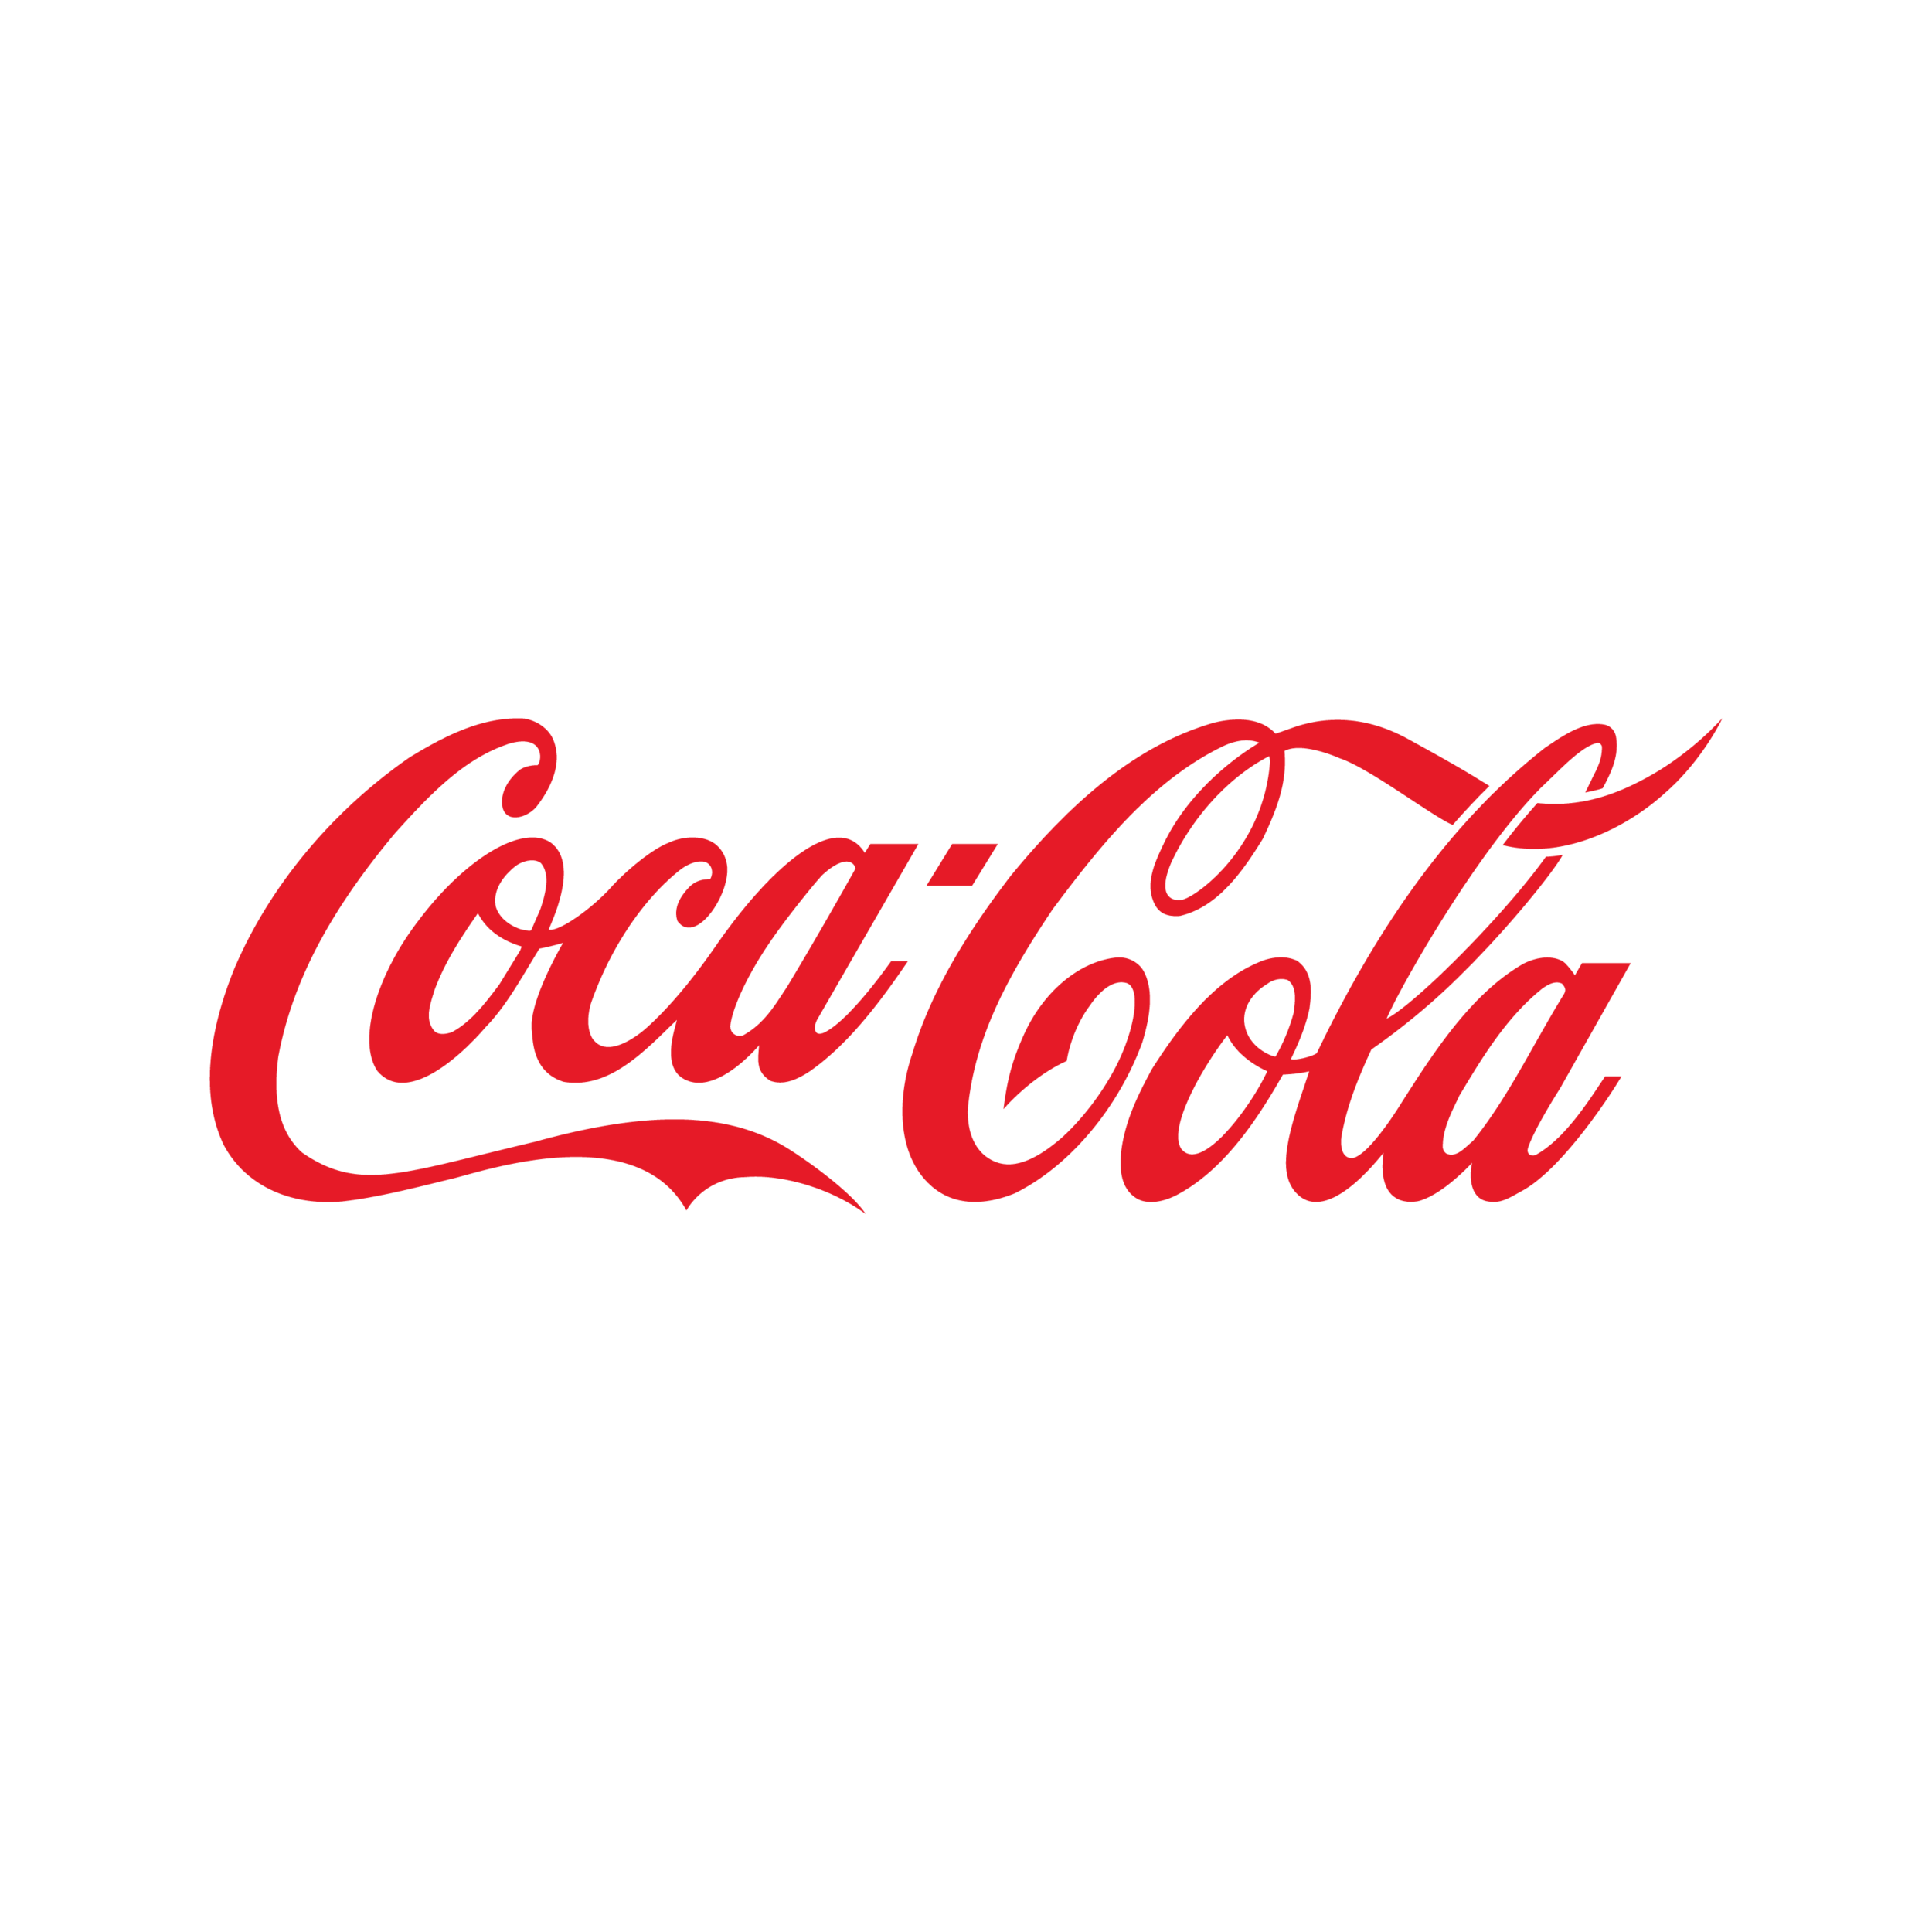 Coca Cola-01.png